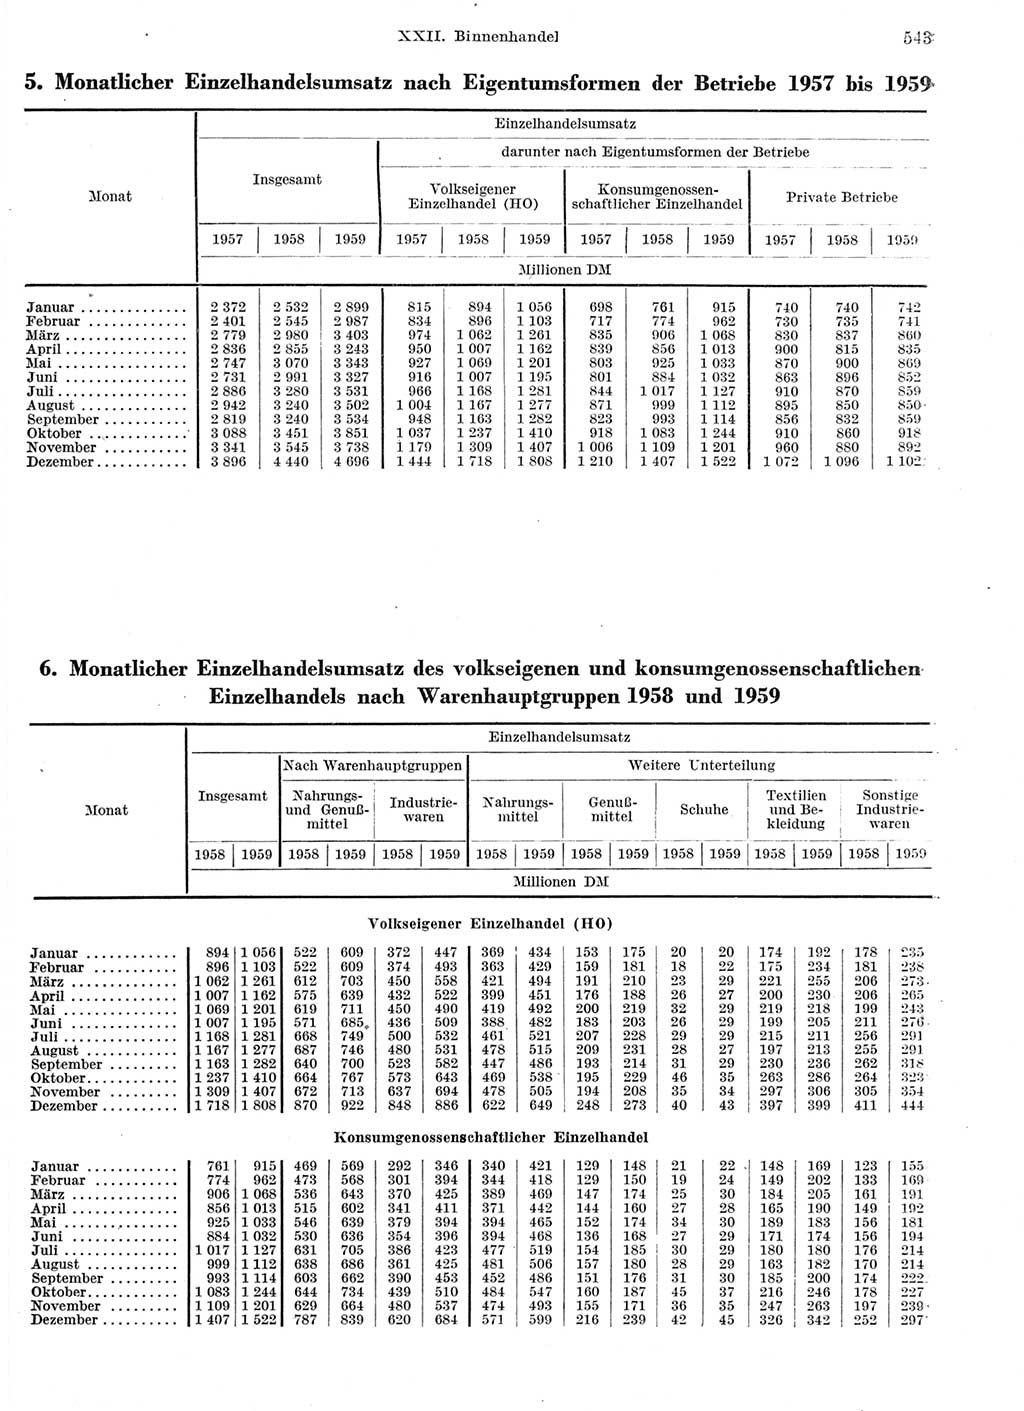 Statistisches Jahrbuch der Deutschen Demokratischen Republik (DDR) 1959, Seite 543 (Stat. Jb. DDR 1959, S. 543)